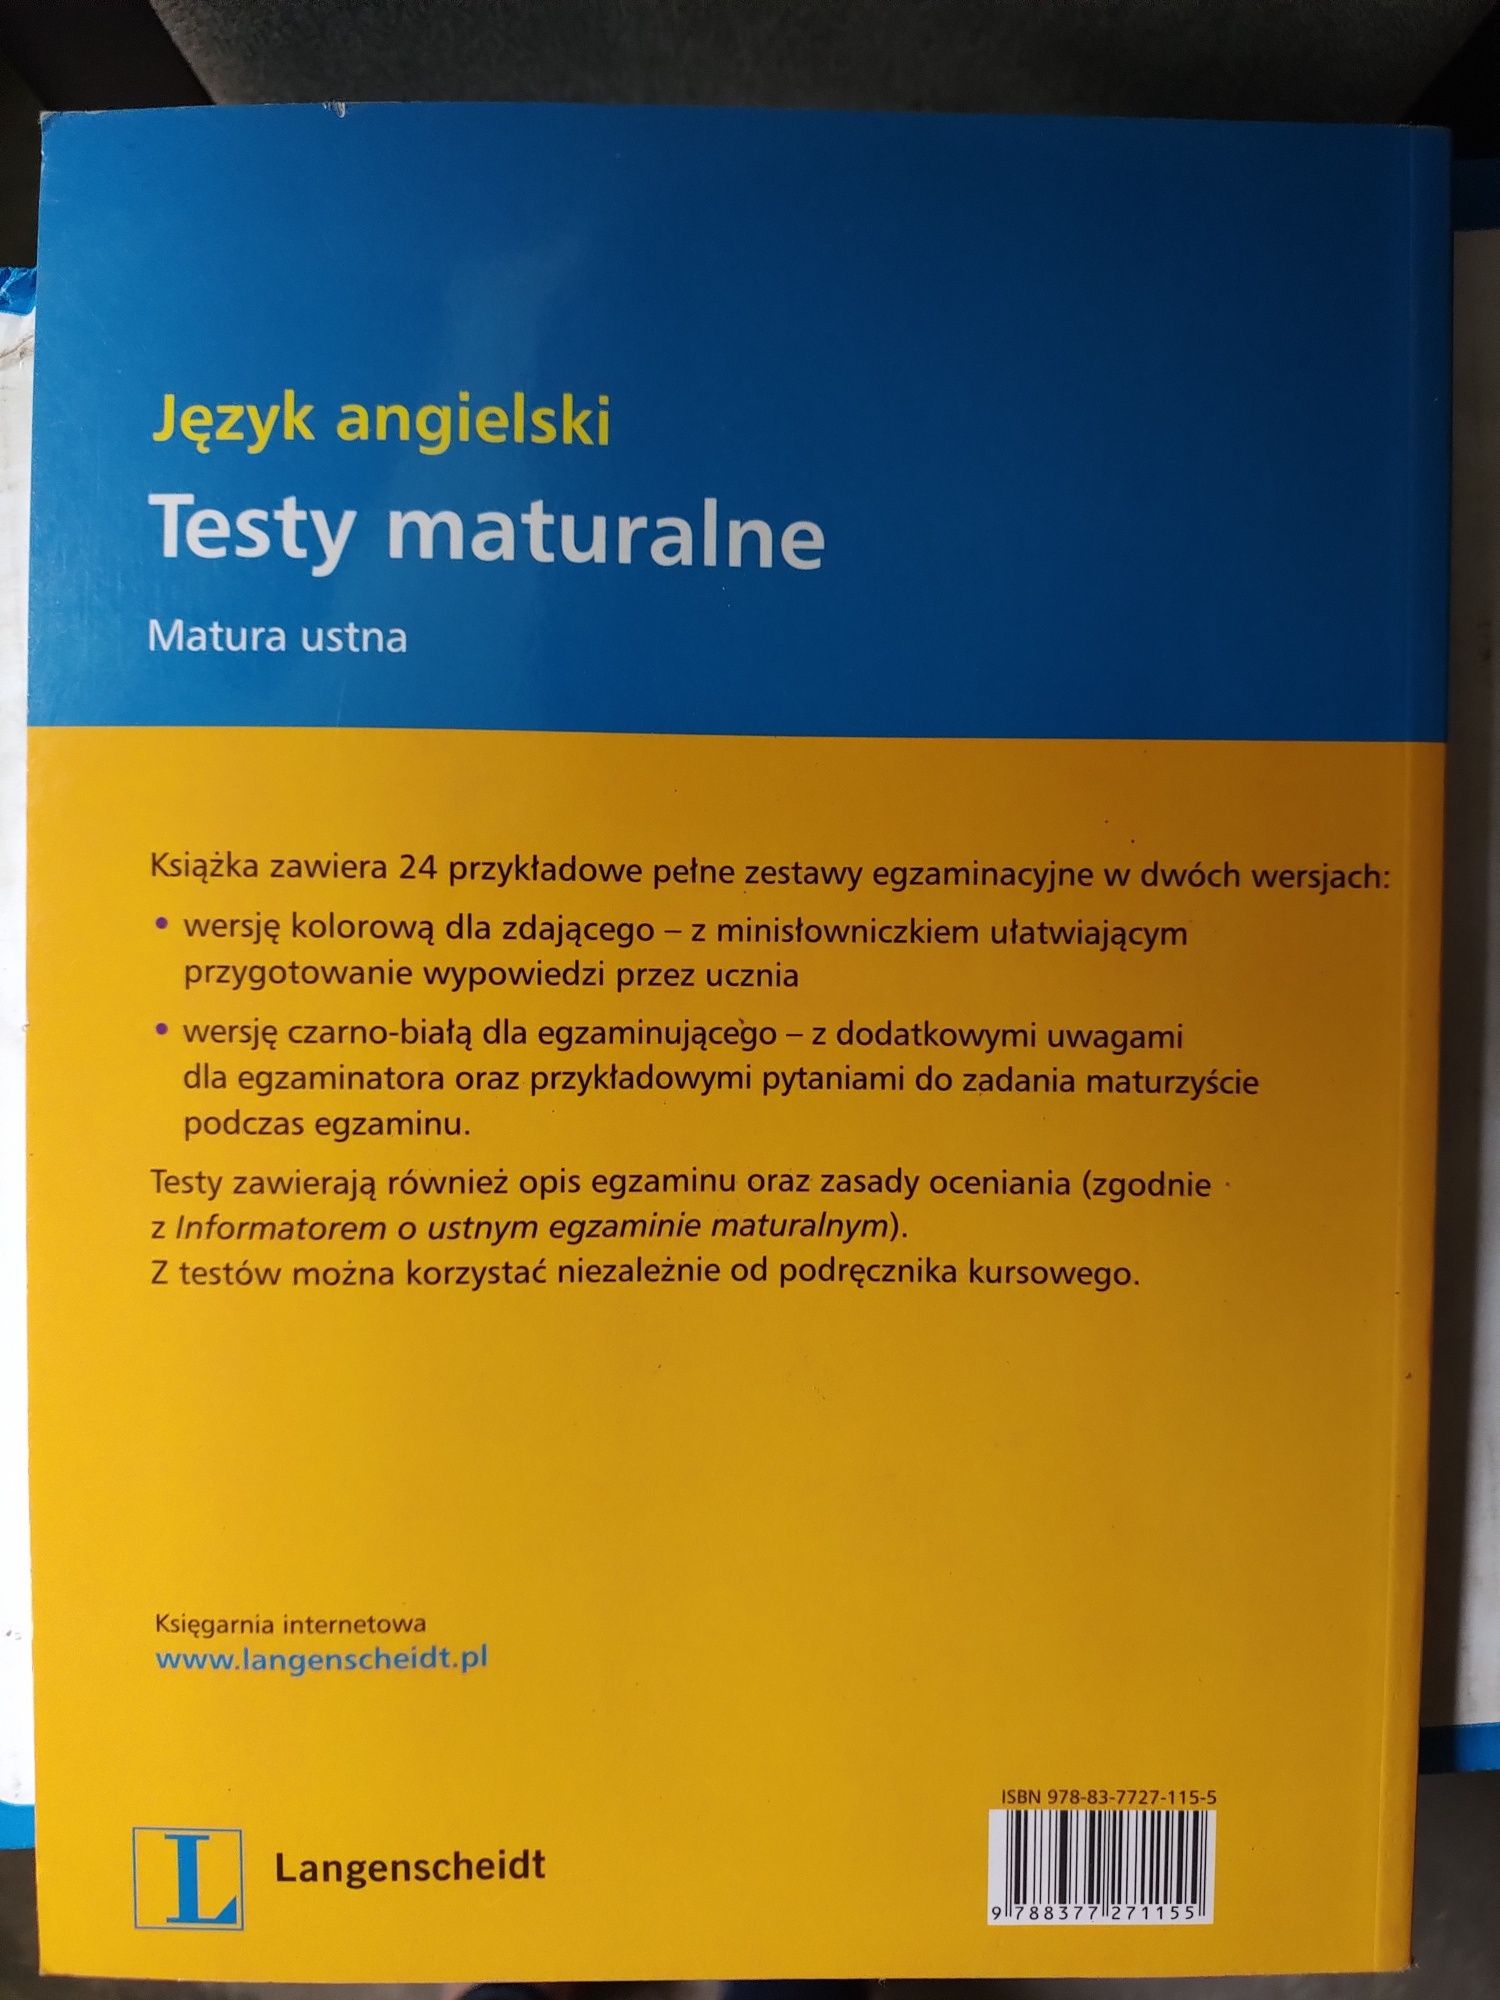 Testy maturalne Język angielski Elżbieta Mańko Langenscheidt